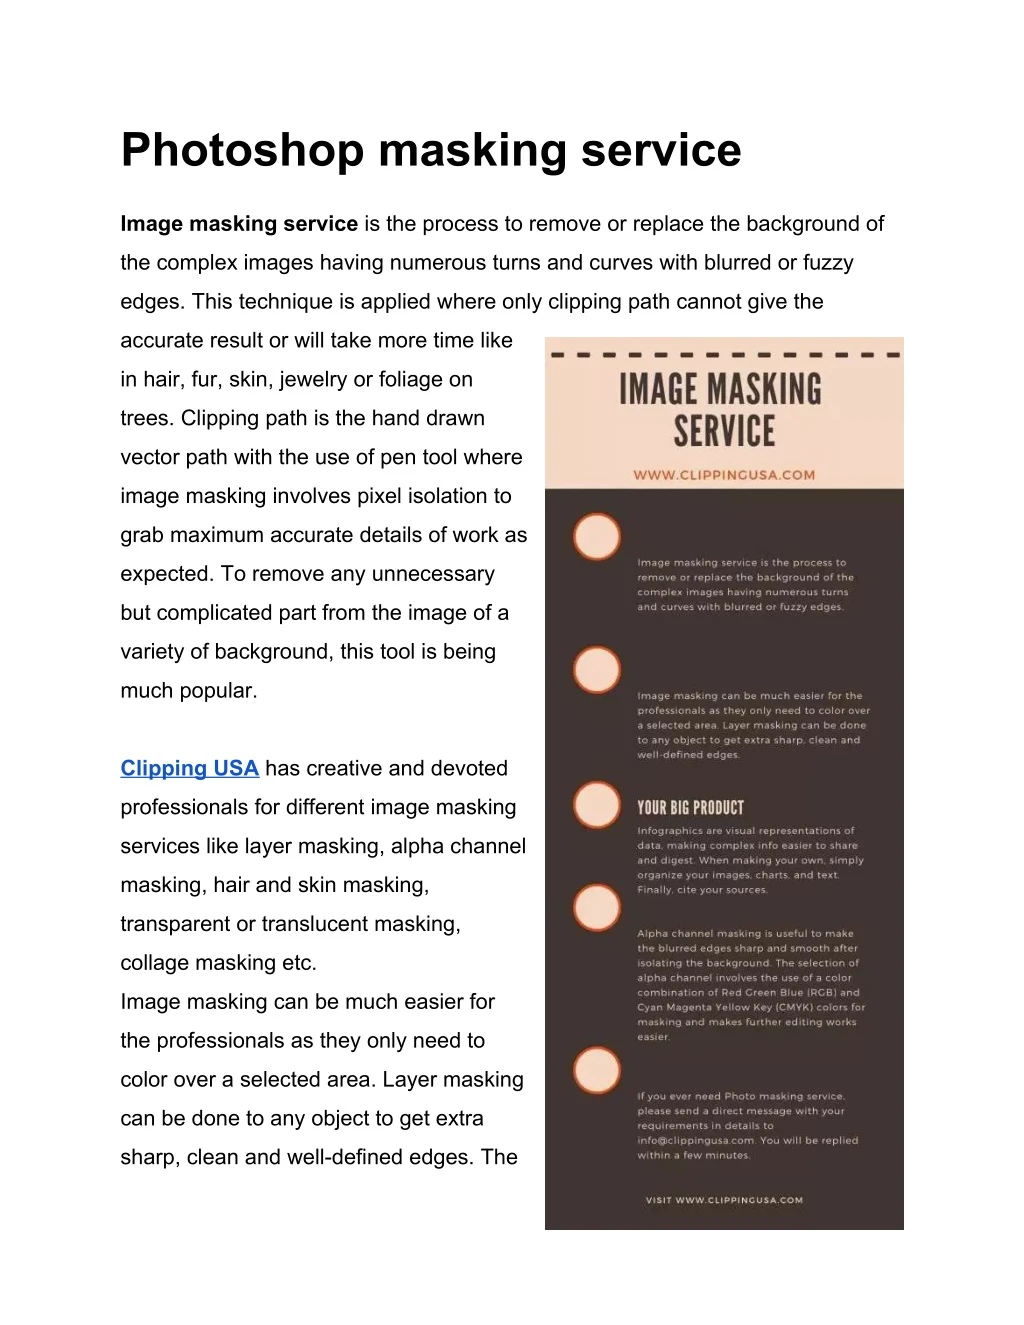 photoshop masking service